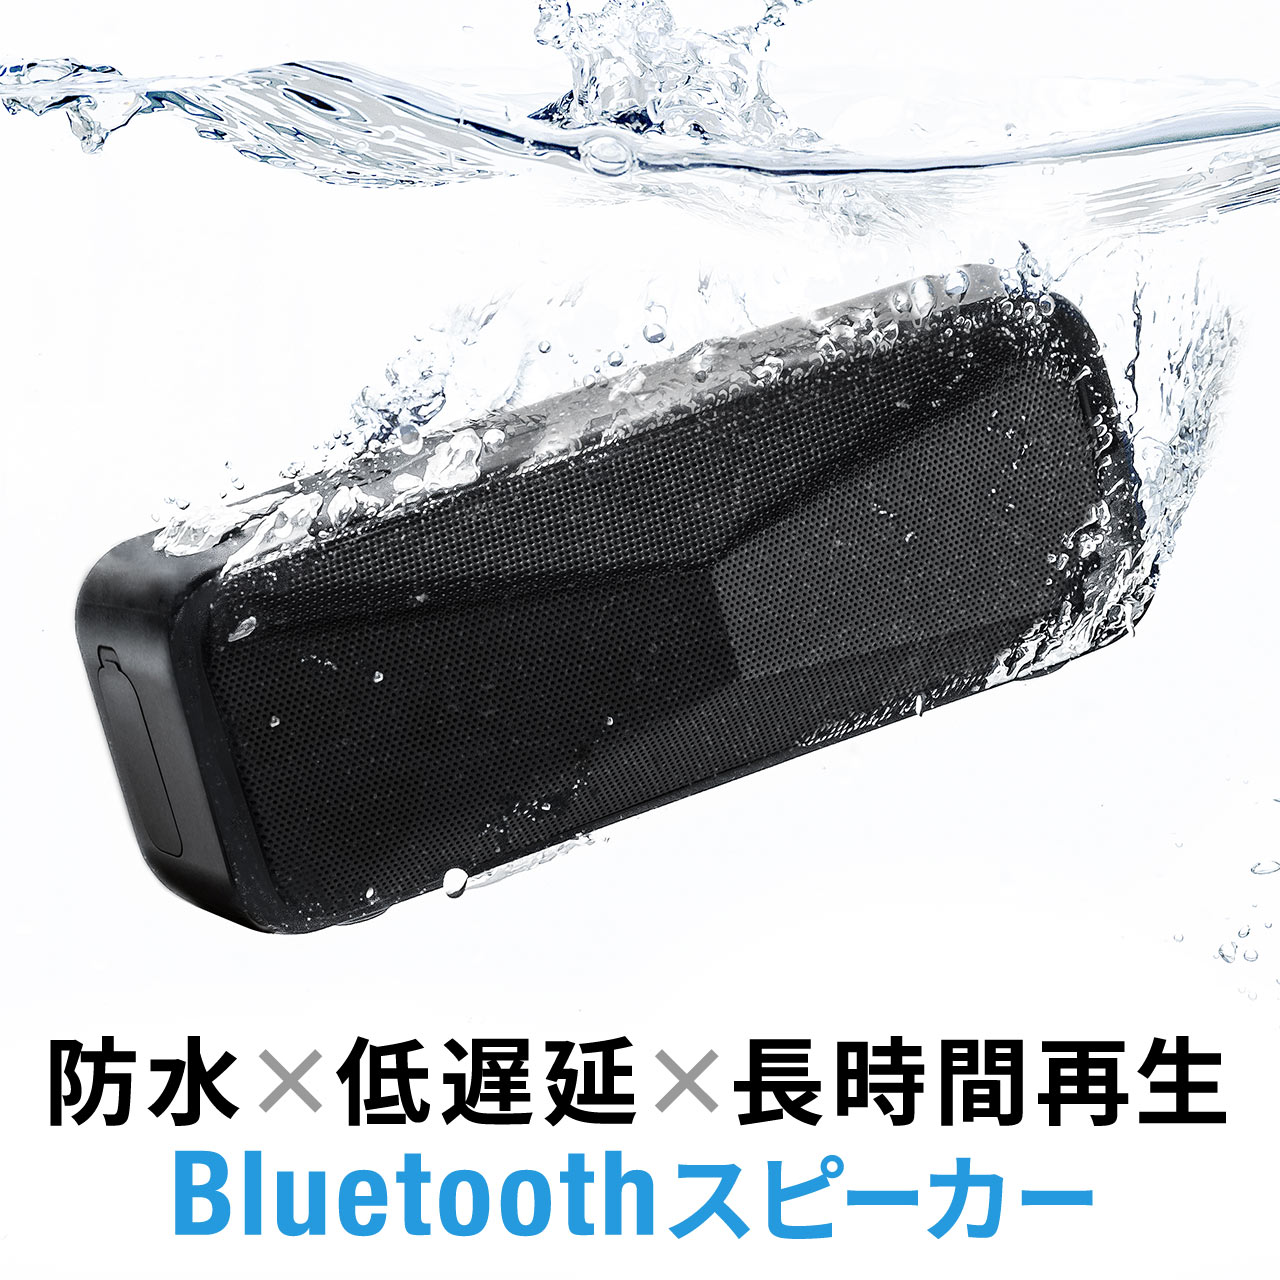 工具 2891-20 Bluetooth付きワイヤレスジョブサイトスピーカー